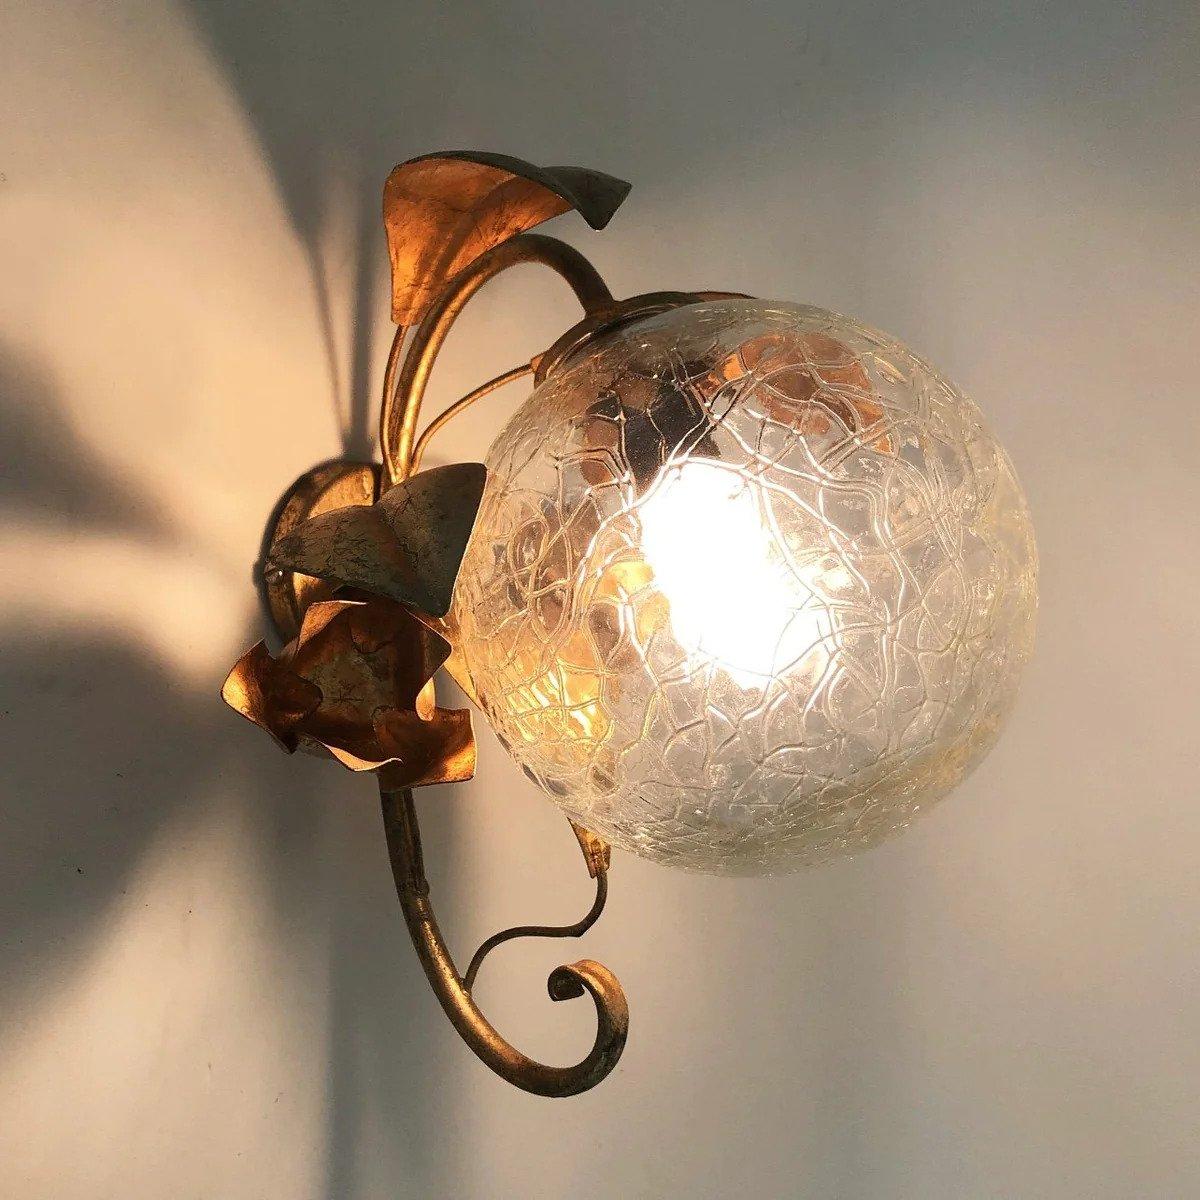 Magnifique paire d'appliques présentant une structure fantaisiste en métal doré avec un motif floral et des globes en verre à effet craquelé. Conçue et produite en Italie dans les années 1950. Son fonctionnement a été testé et il émet une belle